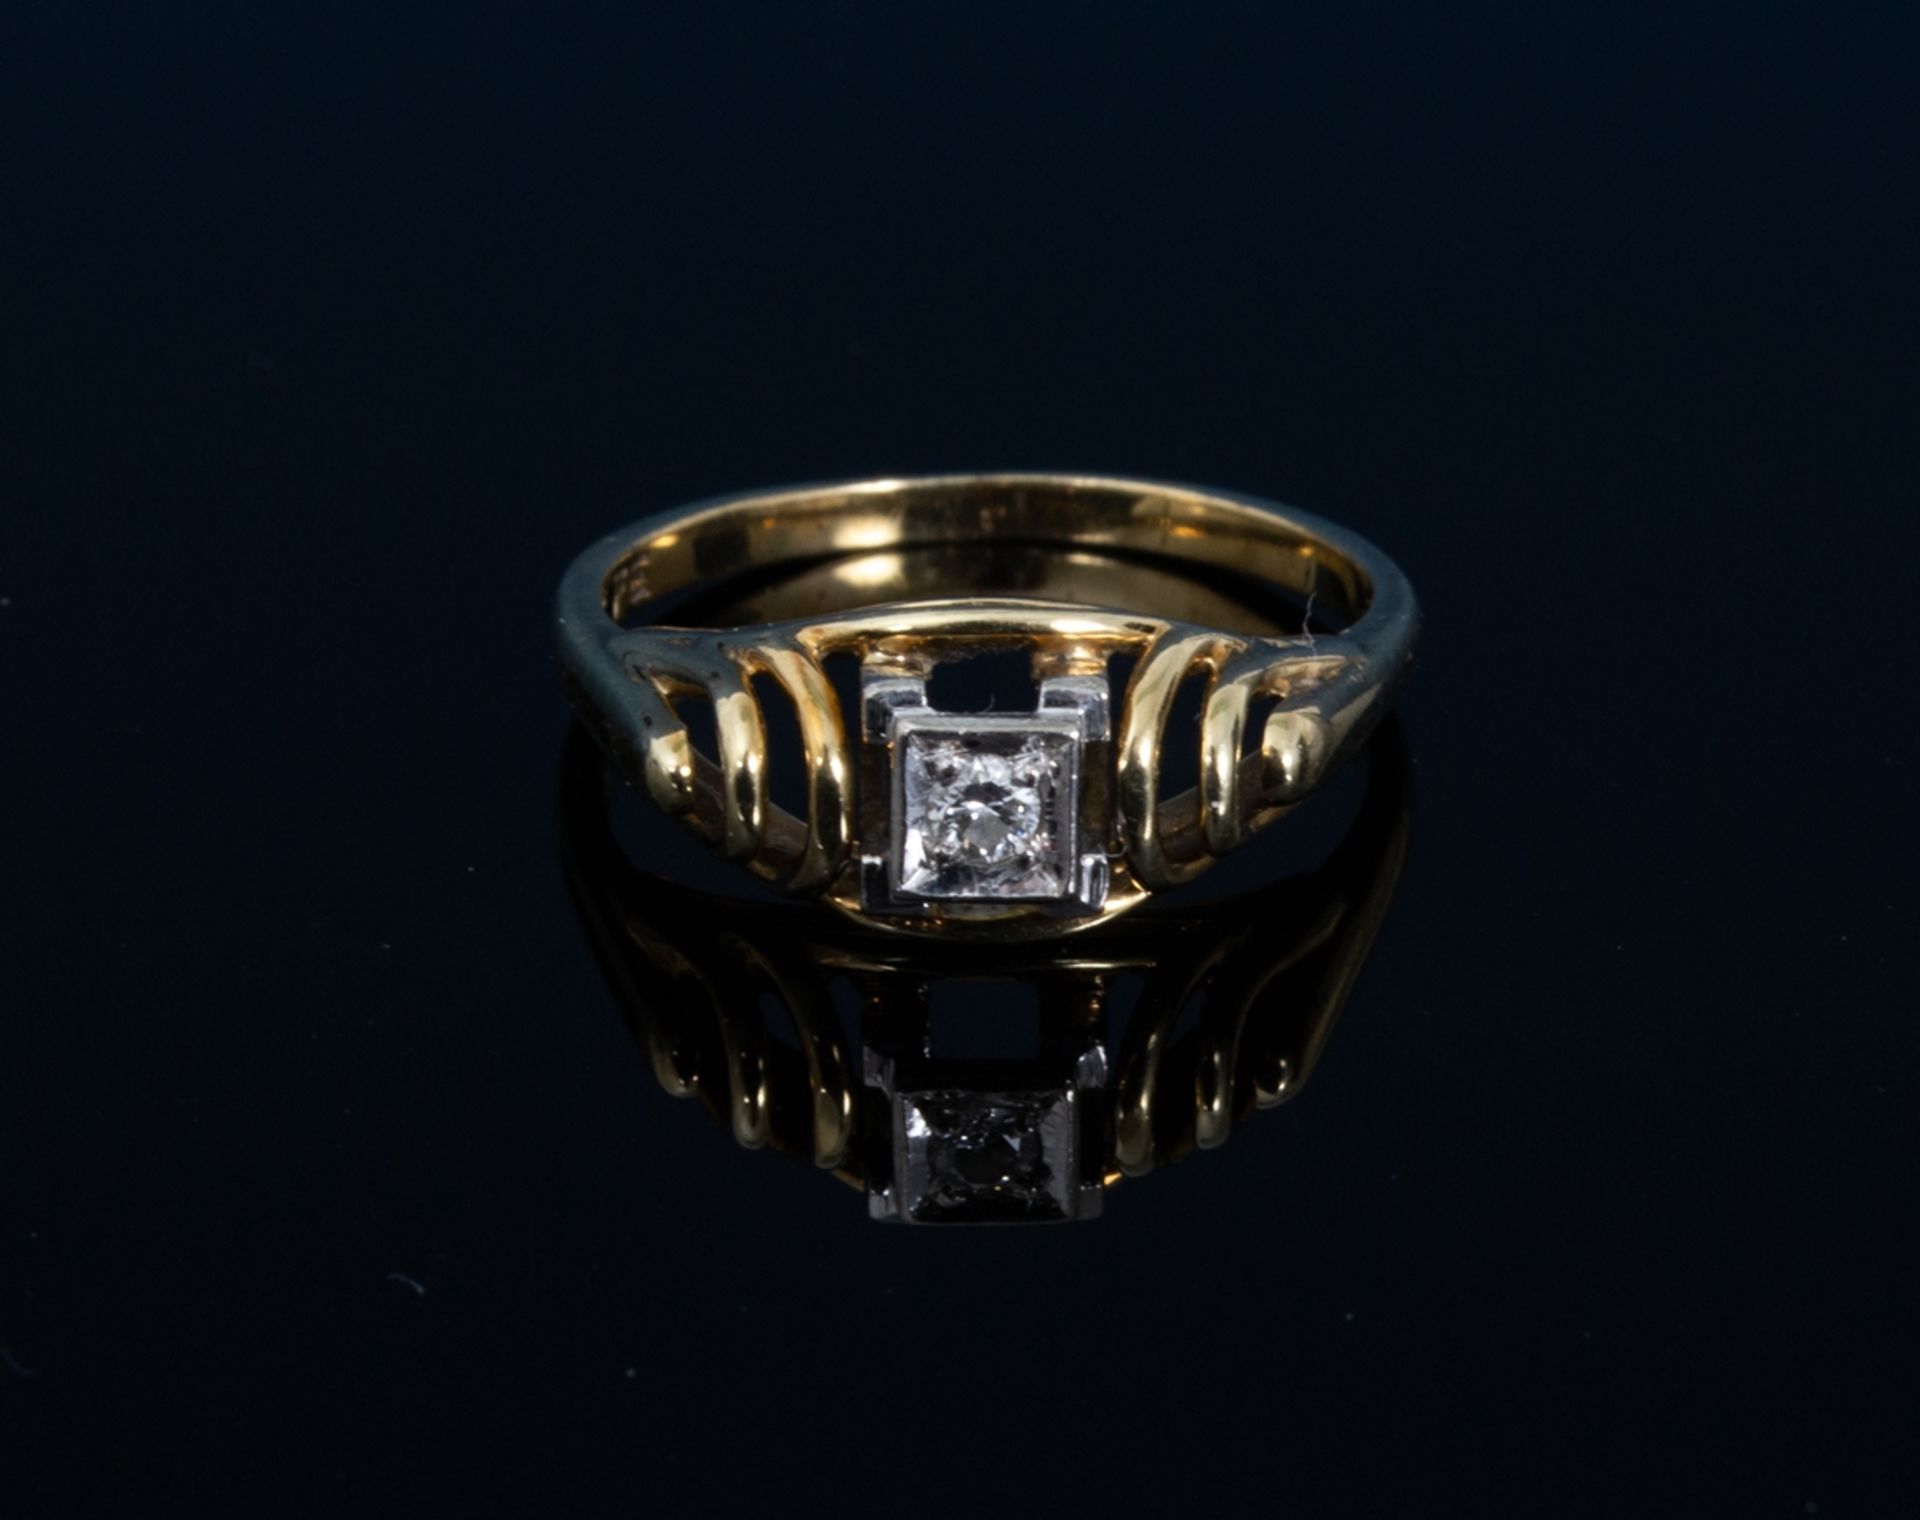 Goldener Ring mit Diamant besetzt, 585er Gelbgold, Diamant ca. 0,1 ct. Ringinnendurchmesser ca. 17 - Bild 3 aus 6